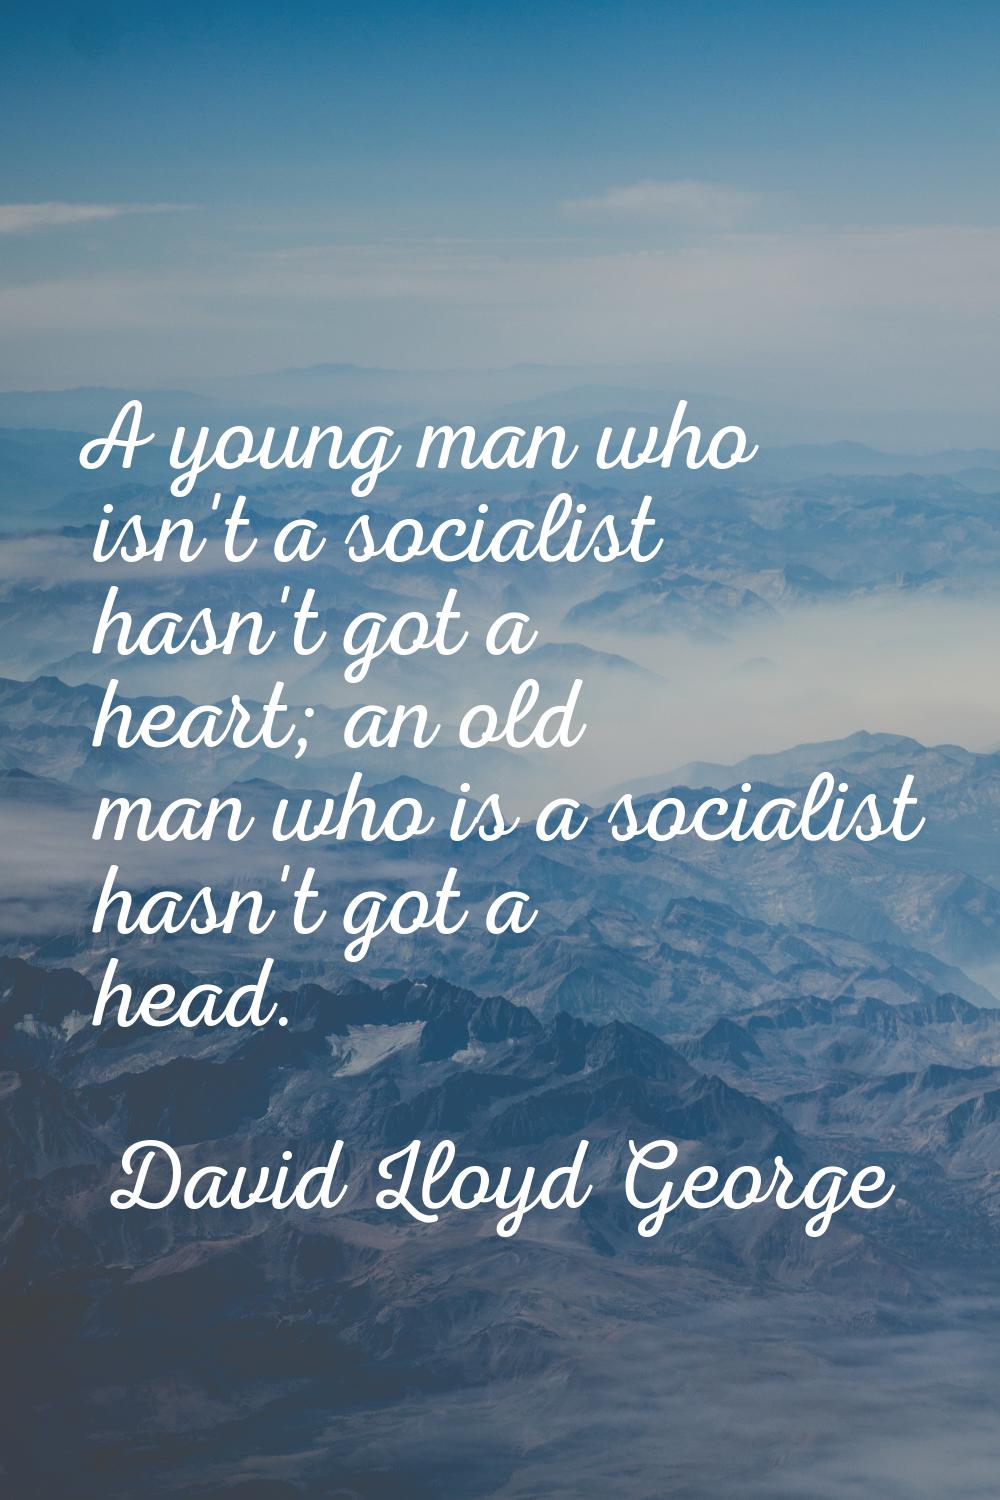 A young man who isn't a socialist hasn't got a heart; an old man who is a socialist hasn't got a he